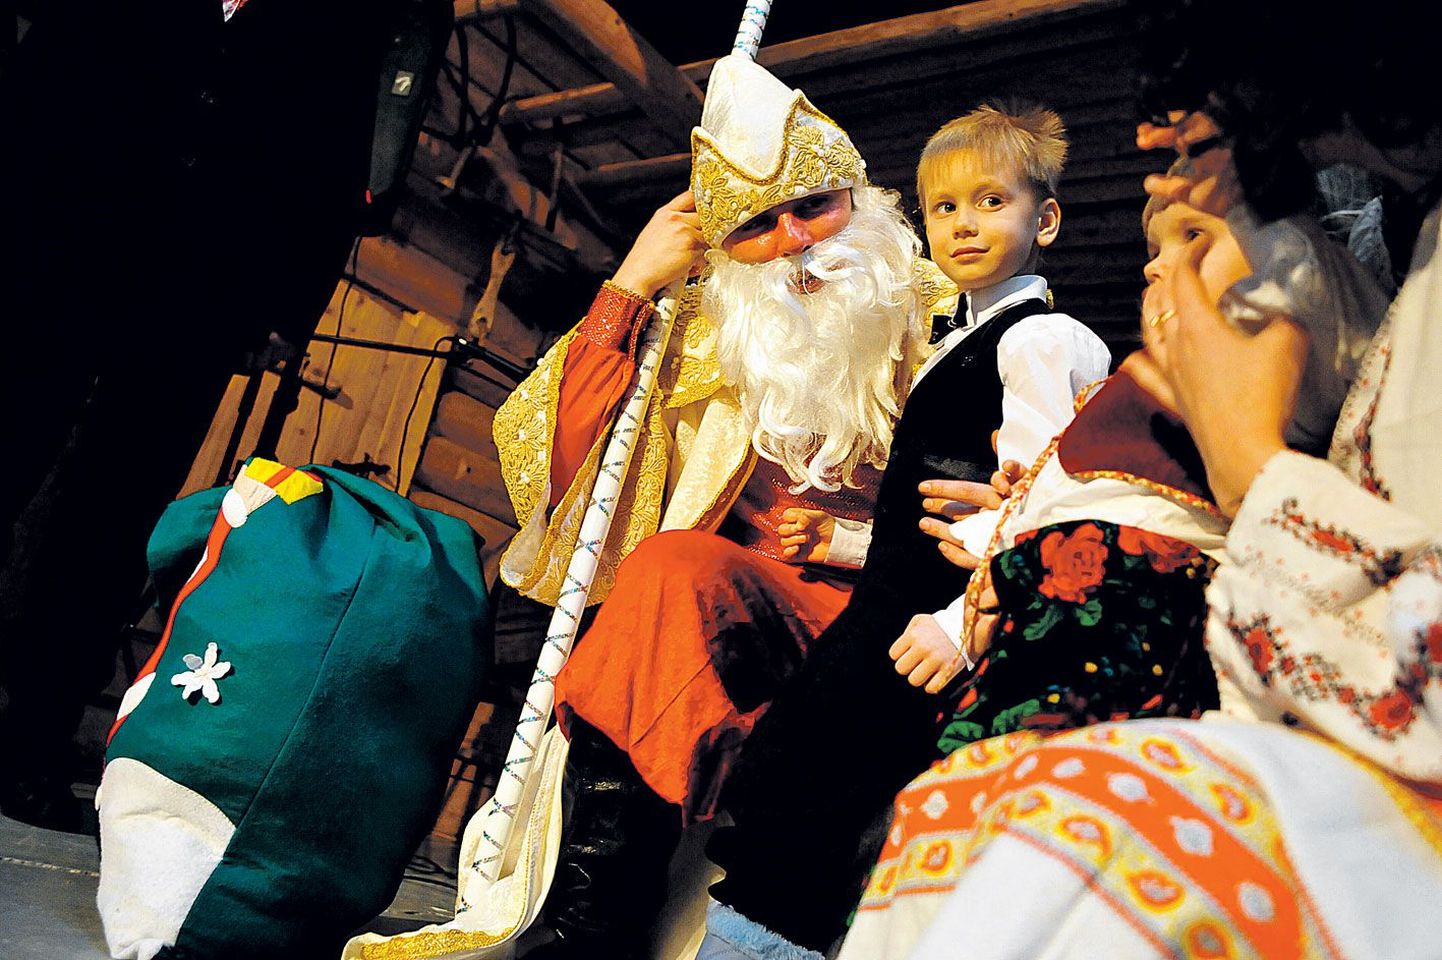 «Deeeduška moroooz, deeeduška moroooz!» hõikasid pisikesed ukraina lapsed laupäeval, 8. jaanuaril ehk õigeusklike teisel jõulupühal Eesti Rahva Muuseumis peetud ukrainlaste ja eestlaste ühisel jõulupeol.